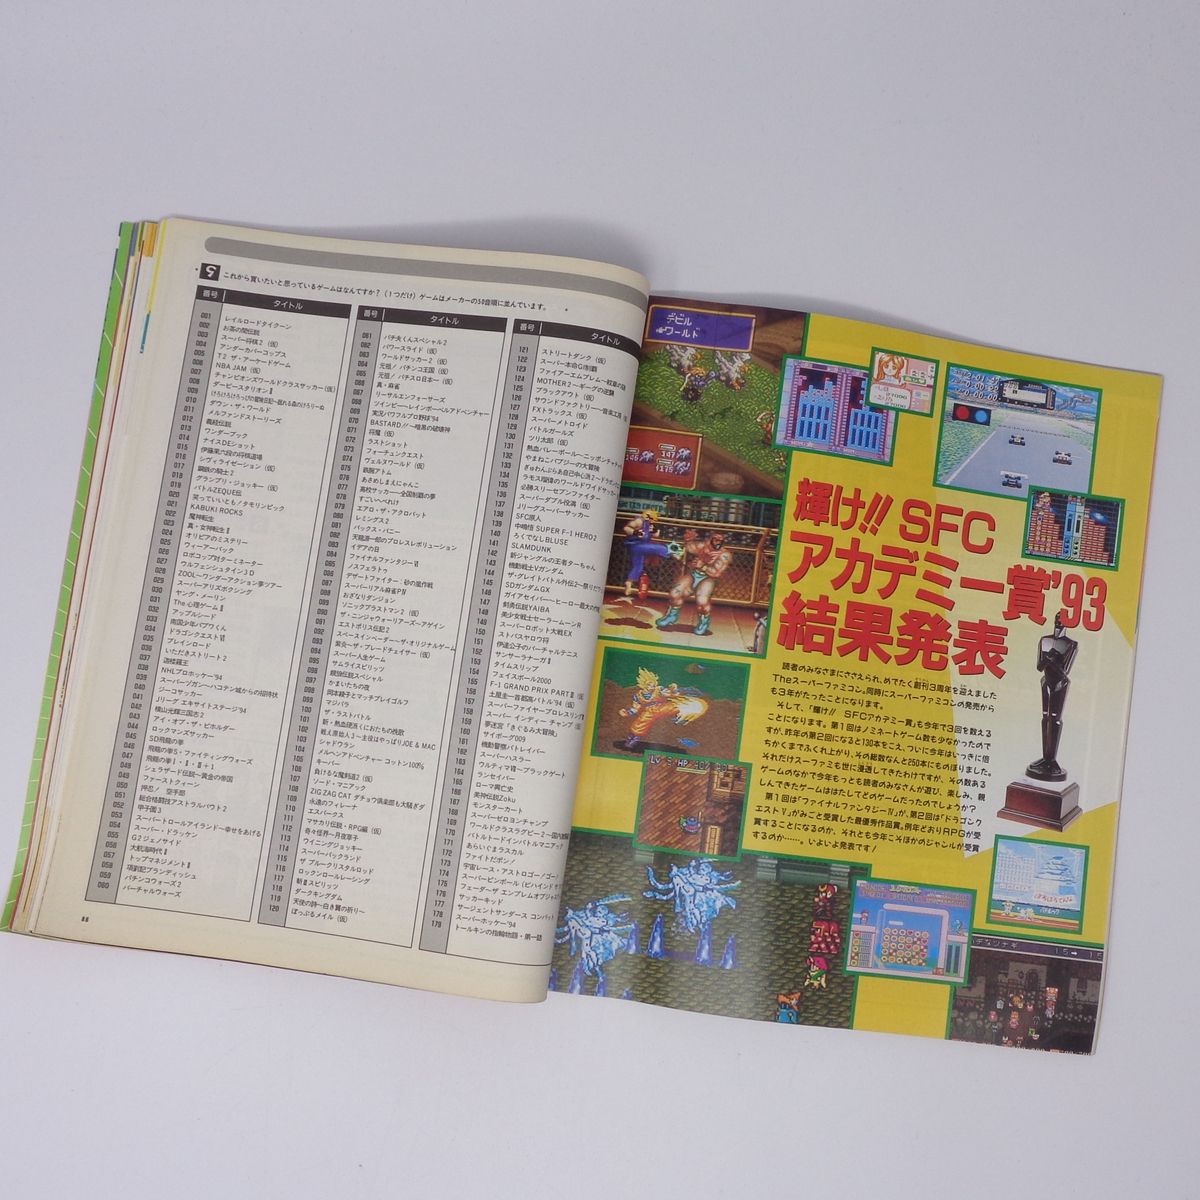 【曲がりあり】The SuperFamicom 1994年1月7・21日号 NO.1 別冊付録無し /ロックマンX//Theスーパーファミコン/ゲーム雑誌[Free Shipping]